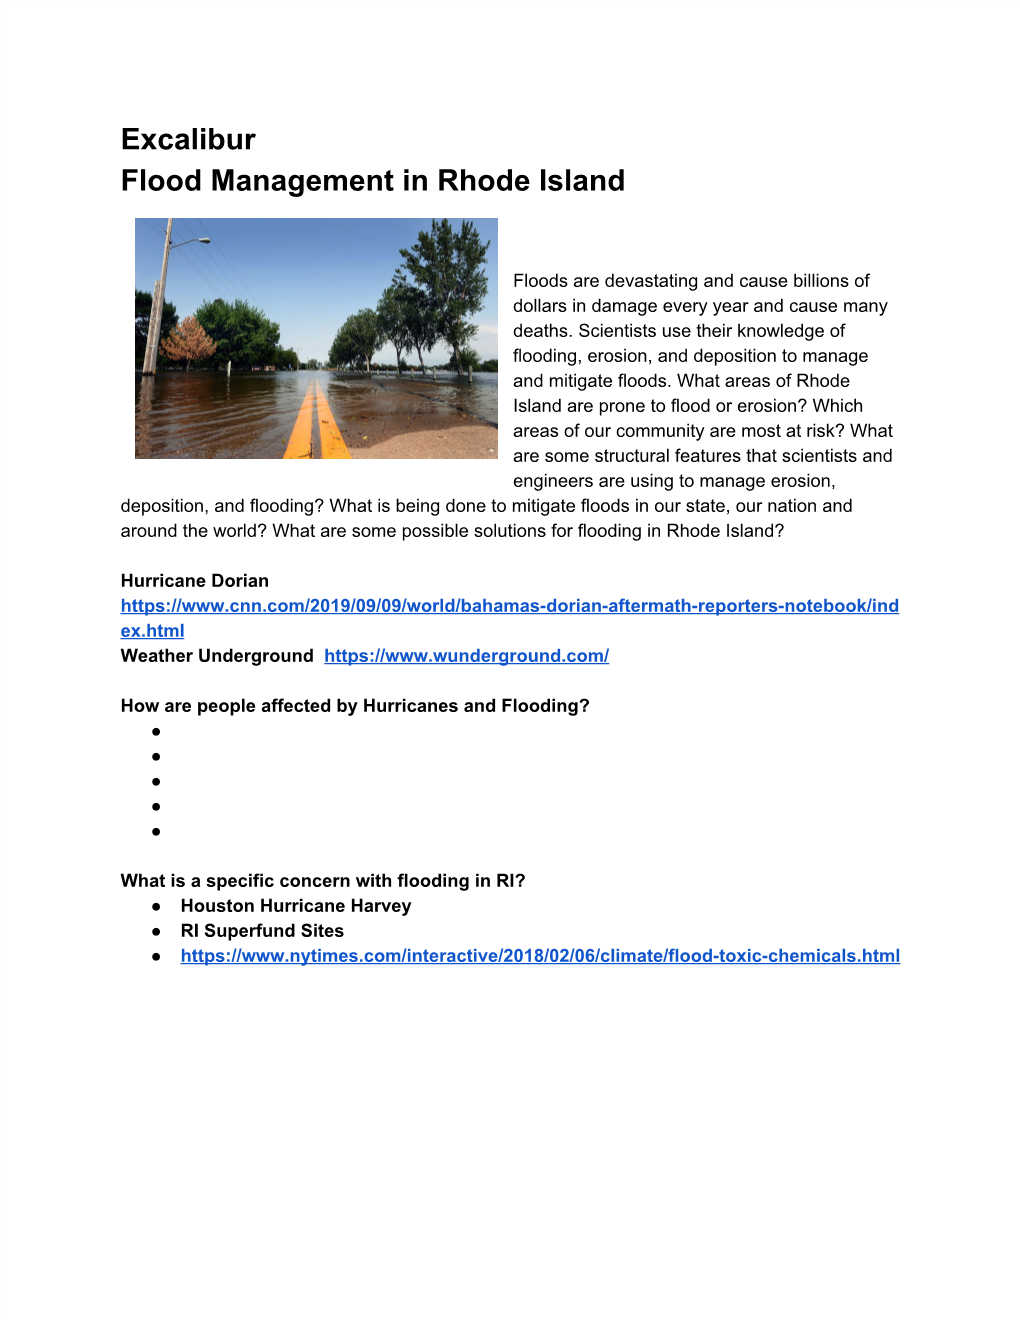 Excalibur Flood Risk in RI